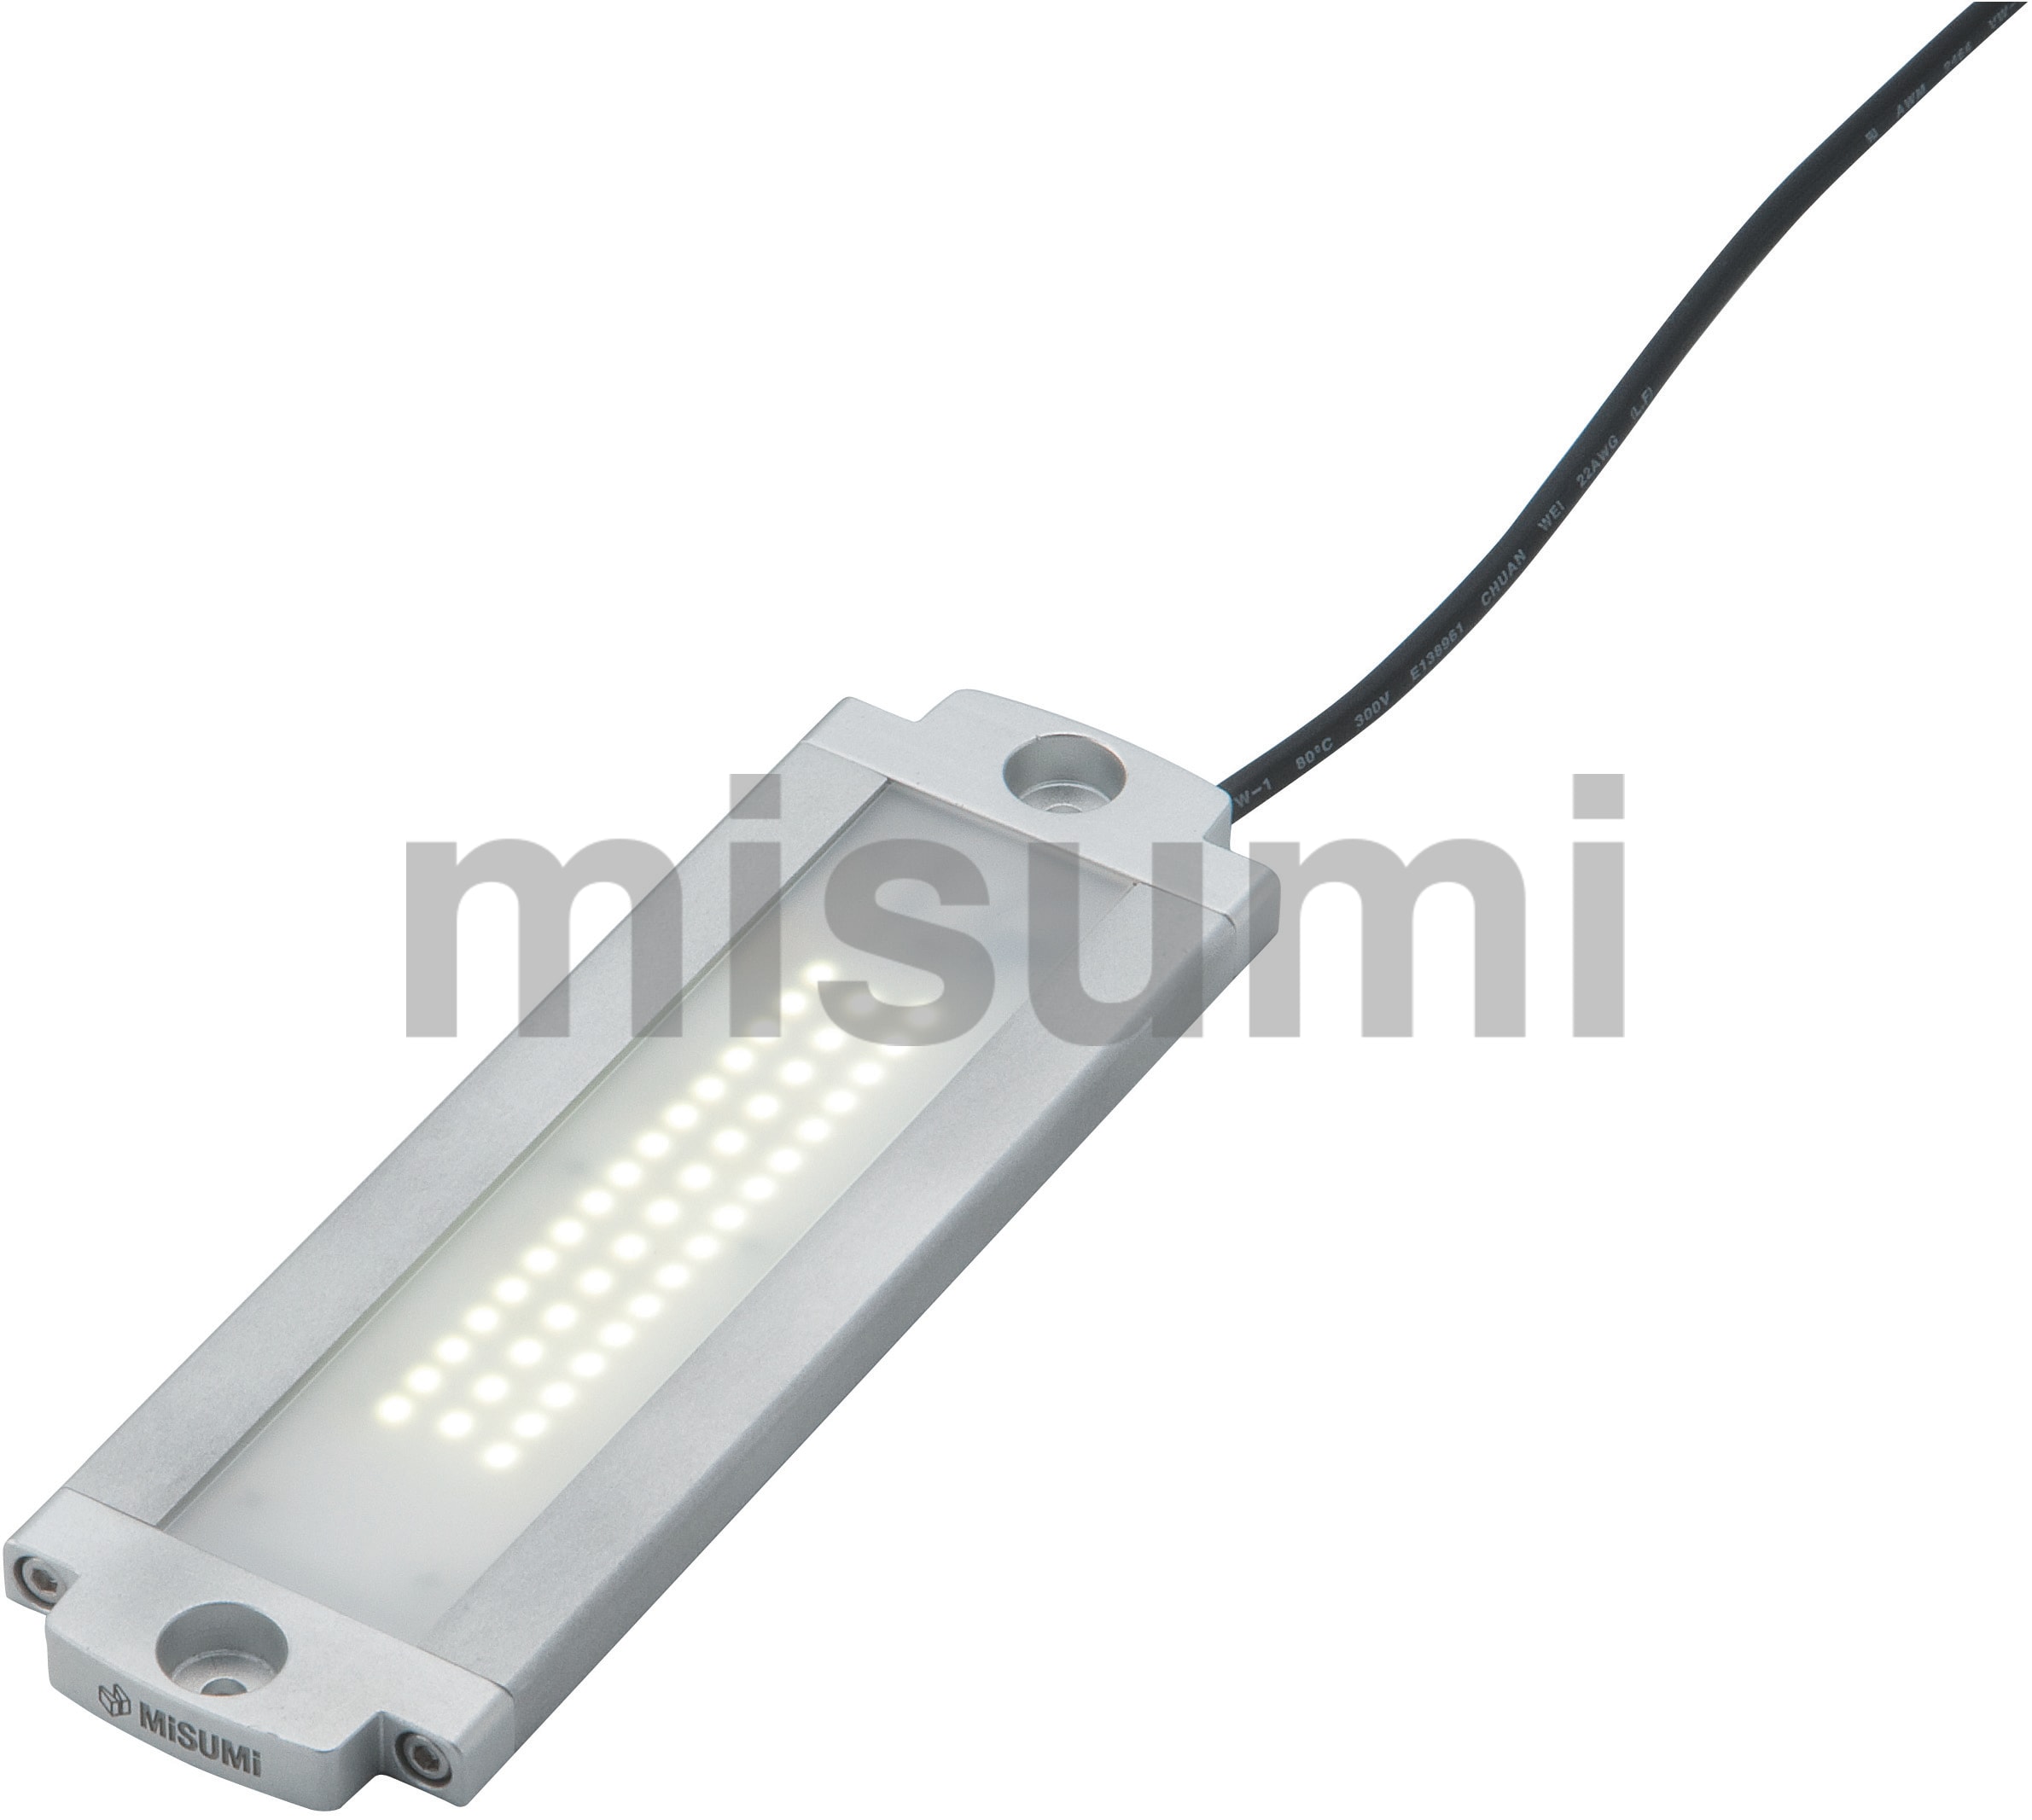 フラット型防水LEDライト NLEシリーズ 日機 MISUMI(ミスミ)